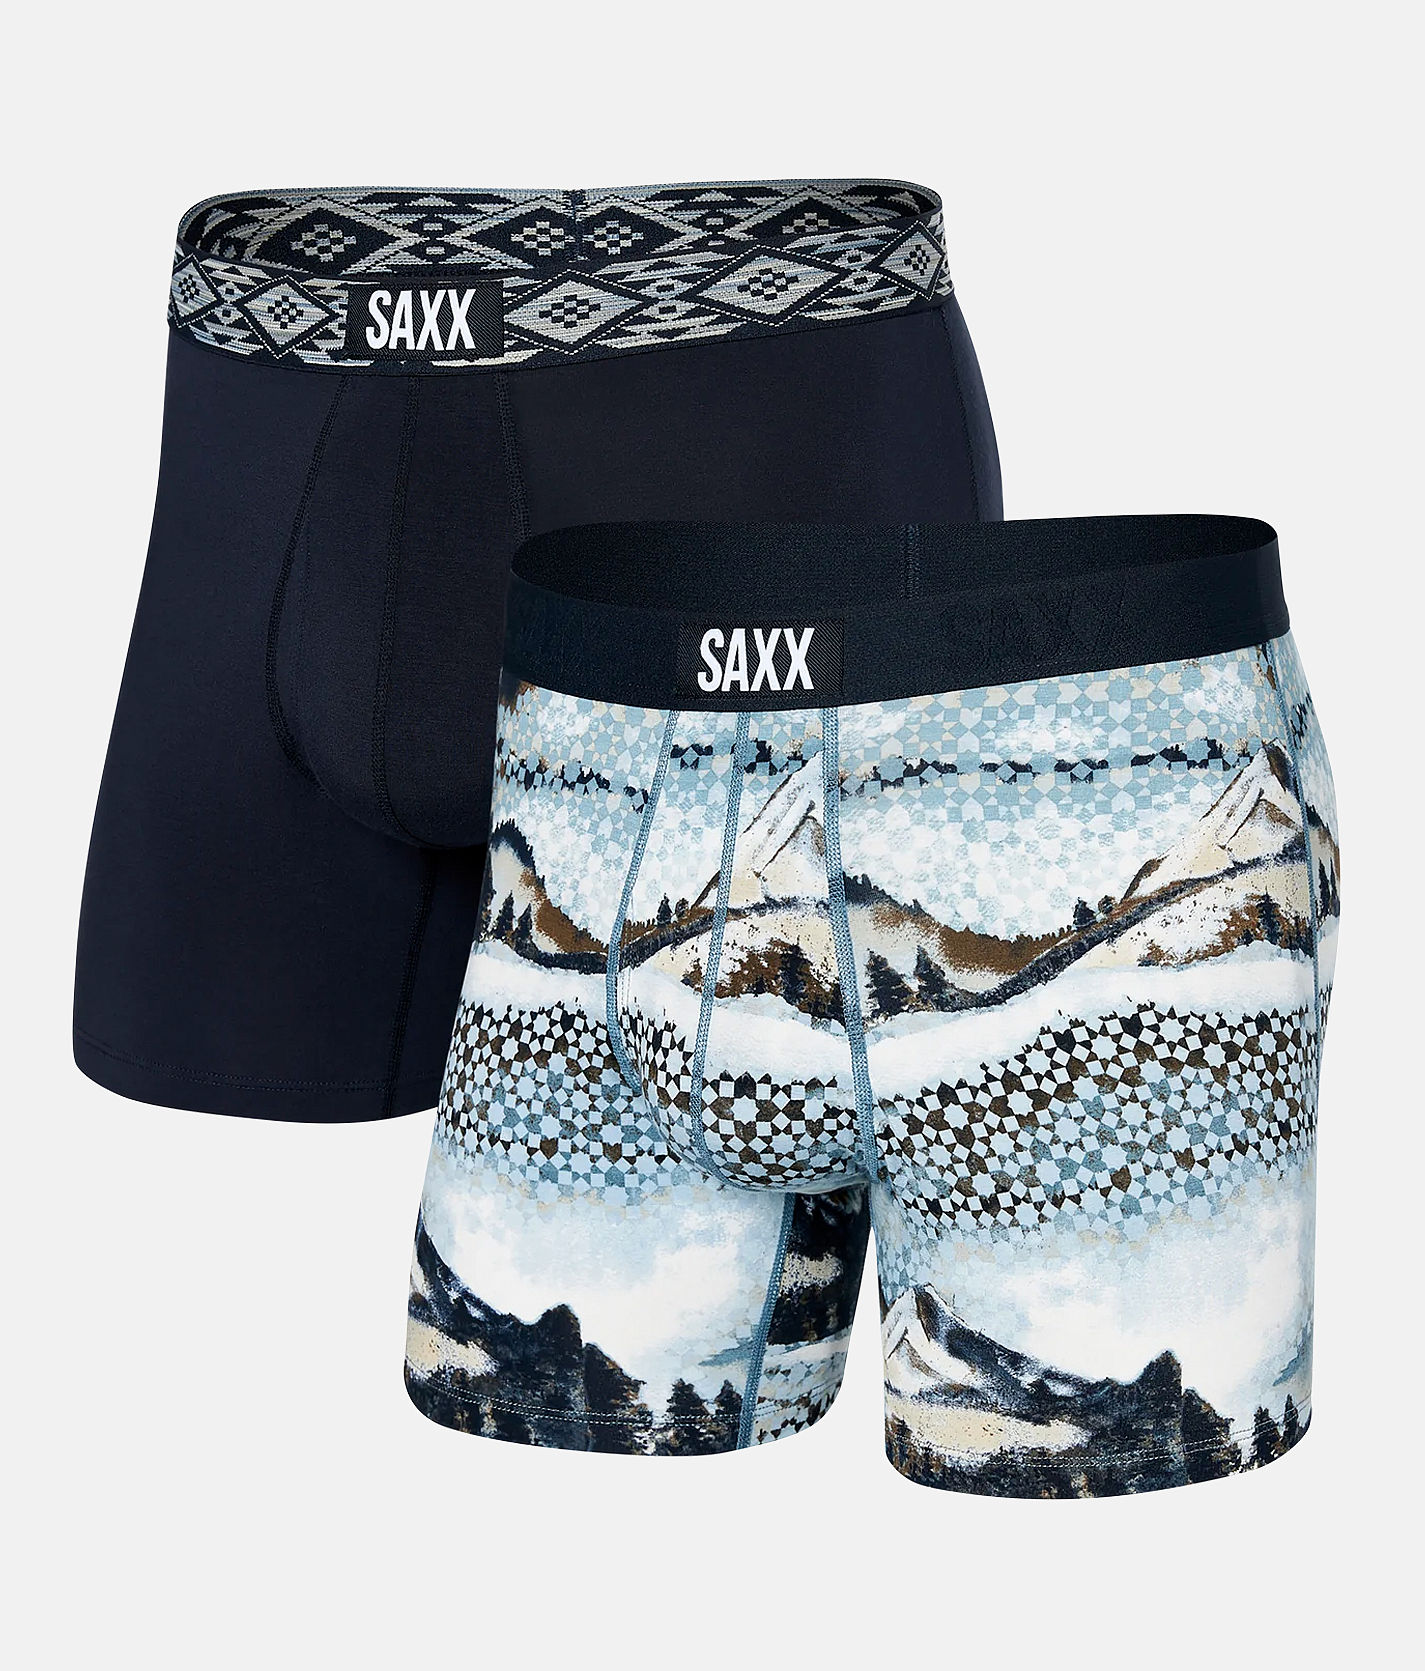  SAXX Underwear Co. Men's Underwear - ULTRA Super Soft